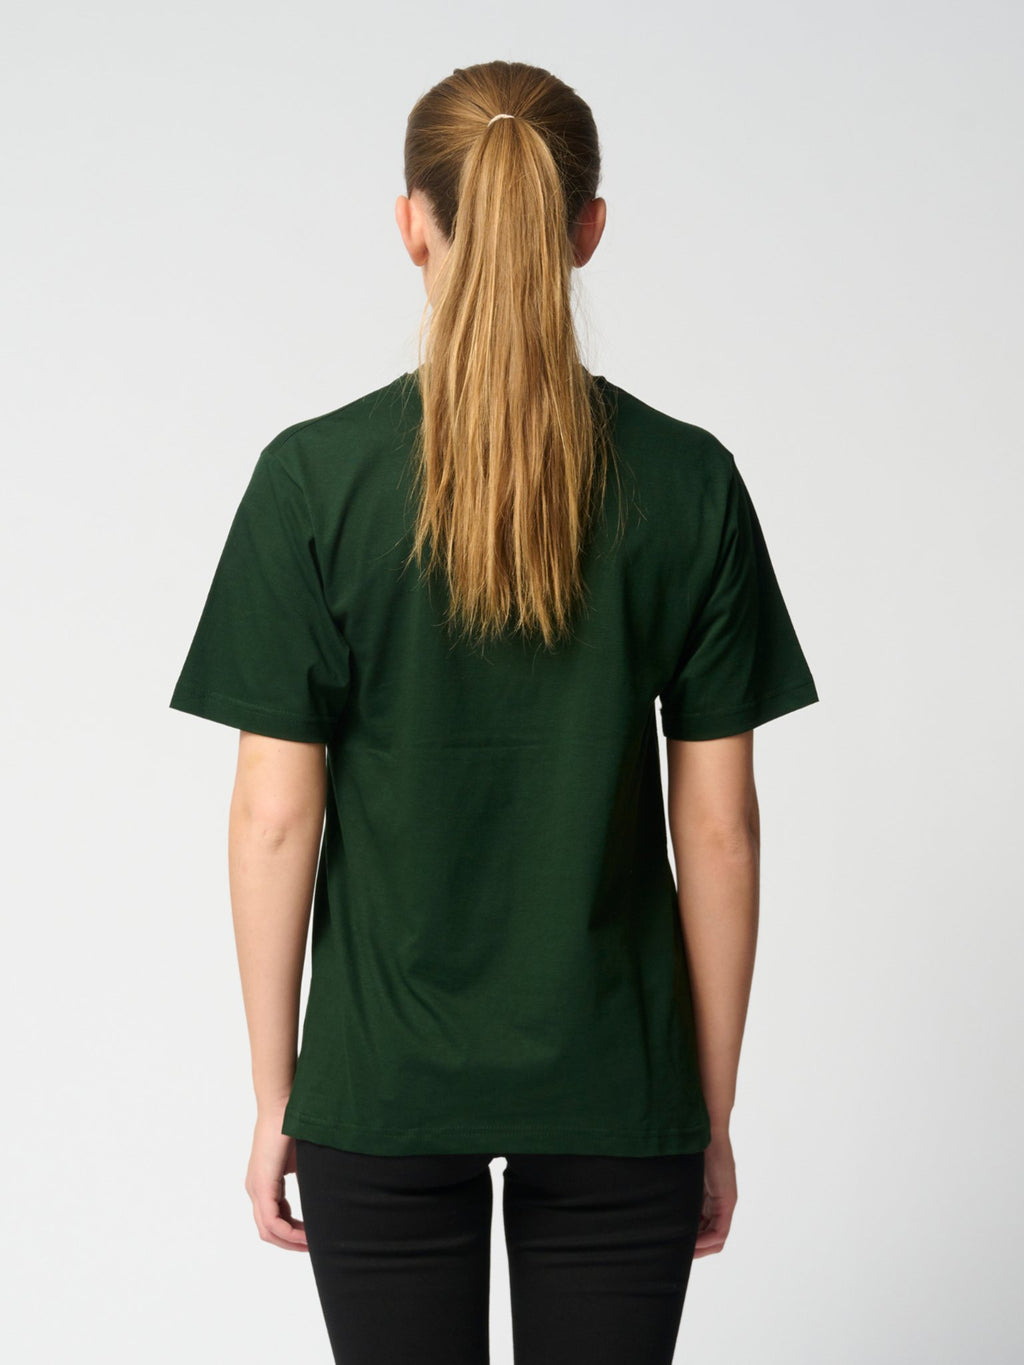 Negabaritiniai marškinėliai - butelis žalias